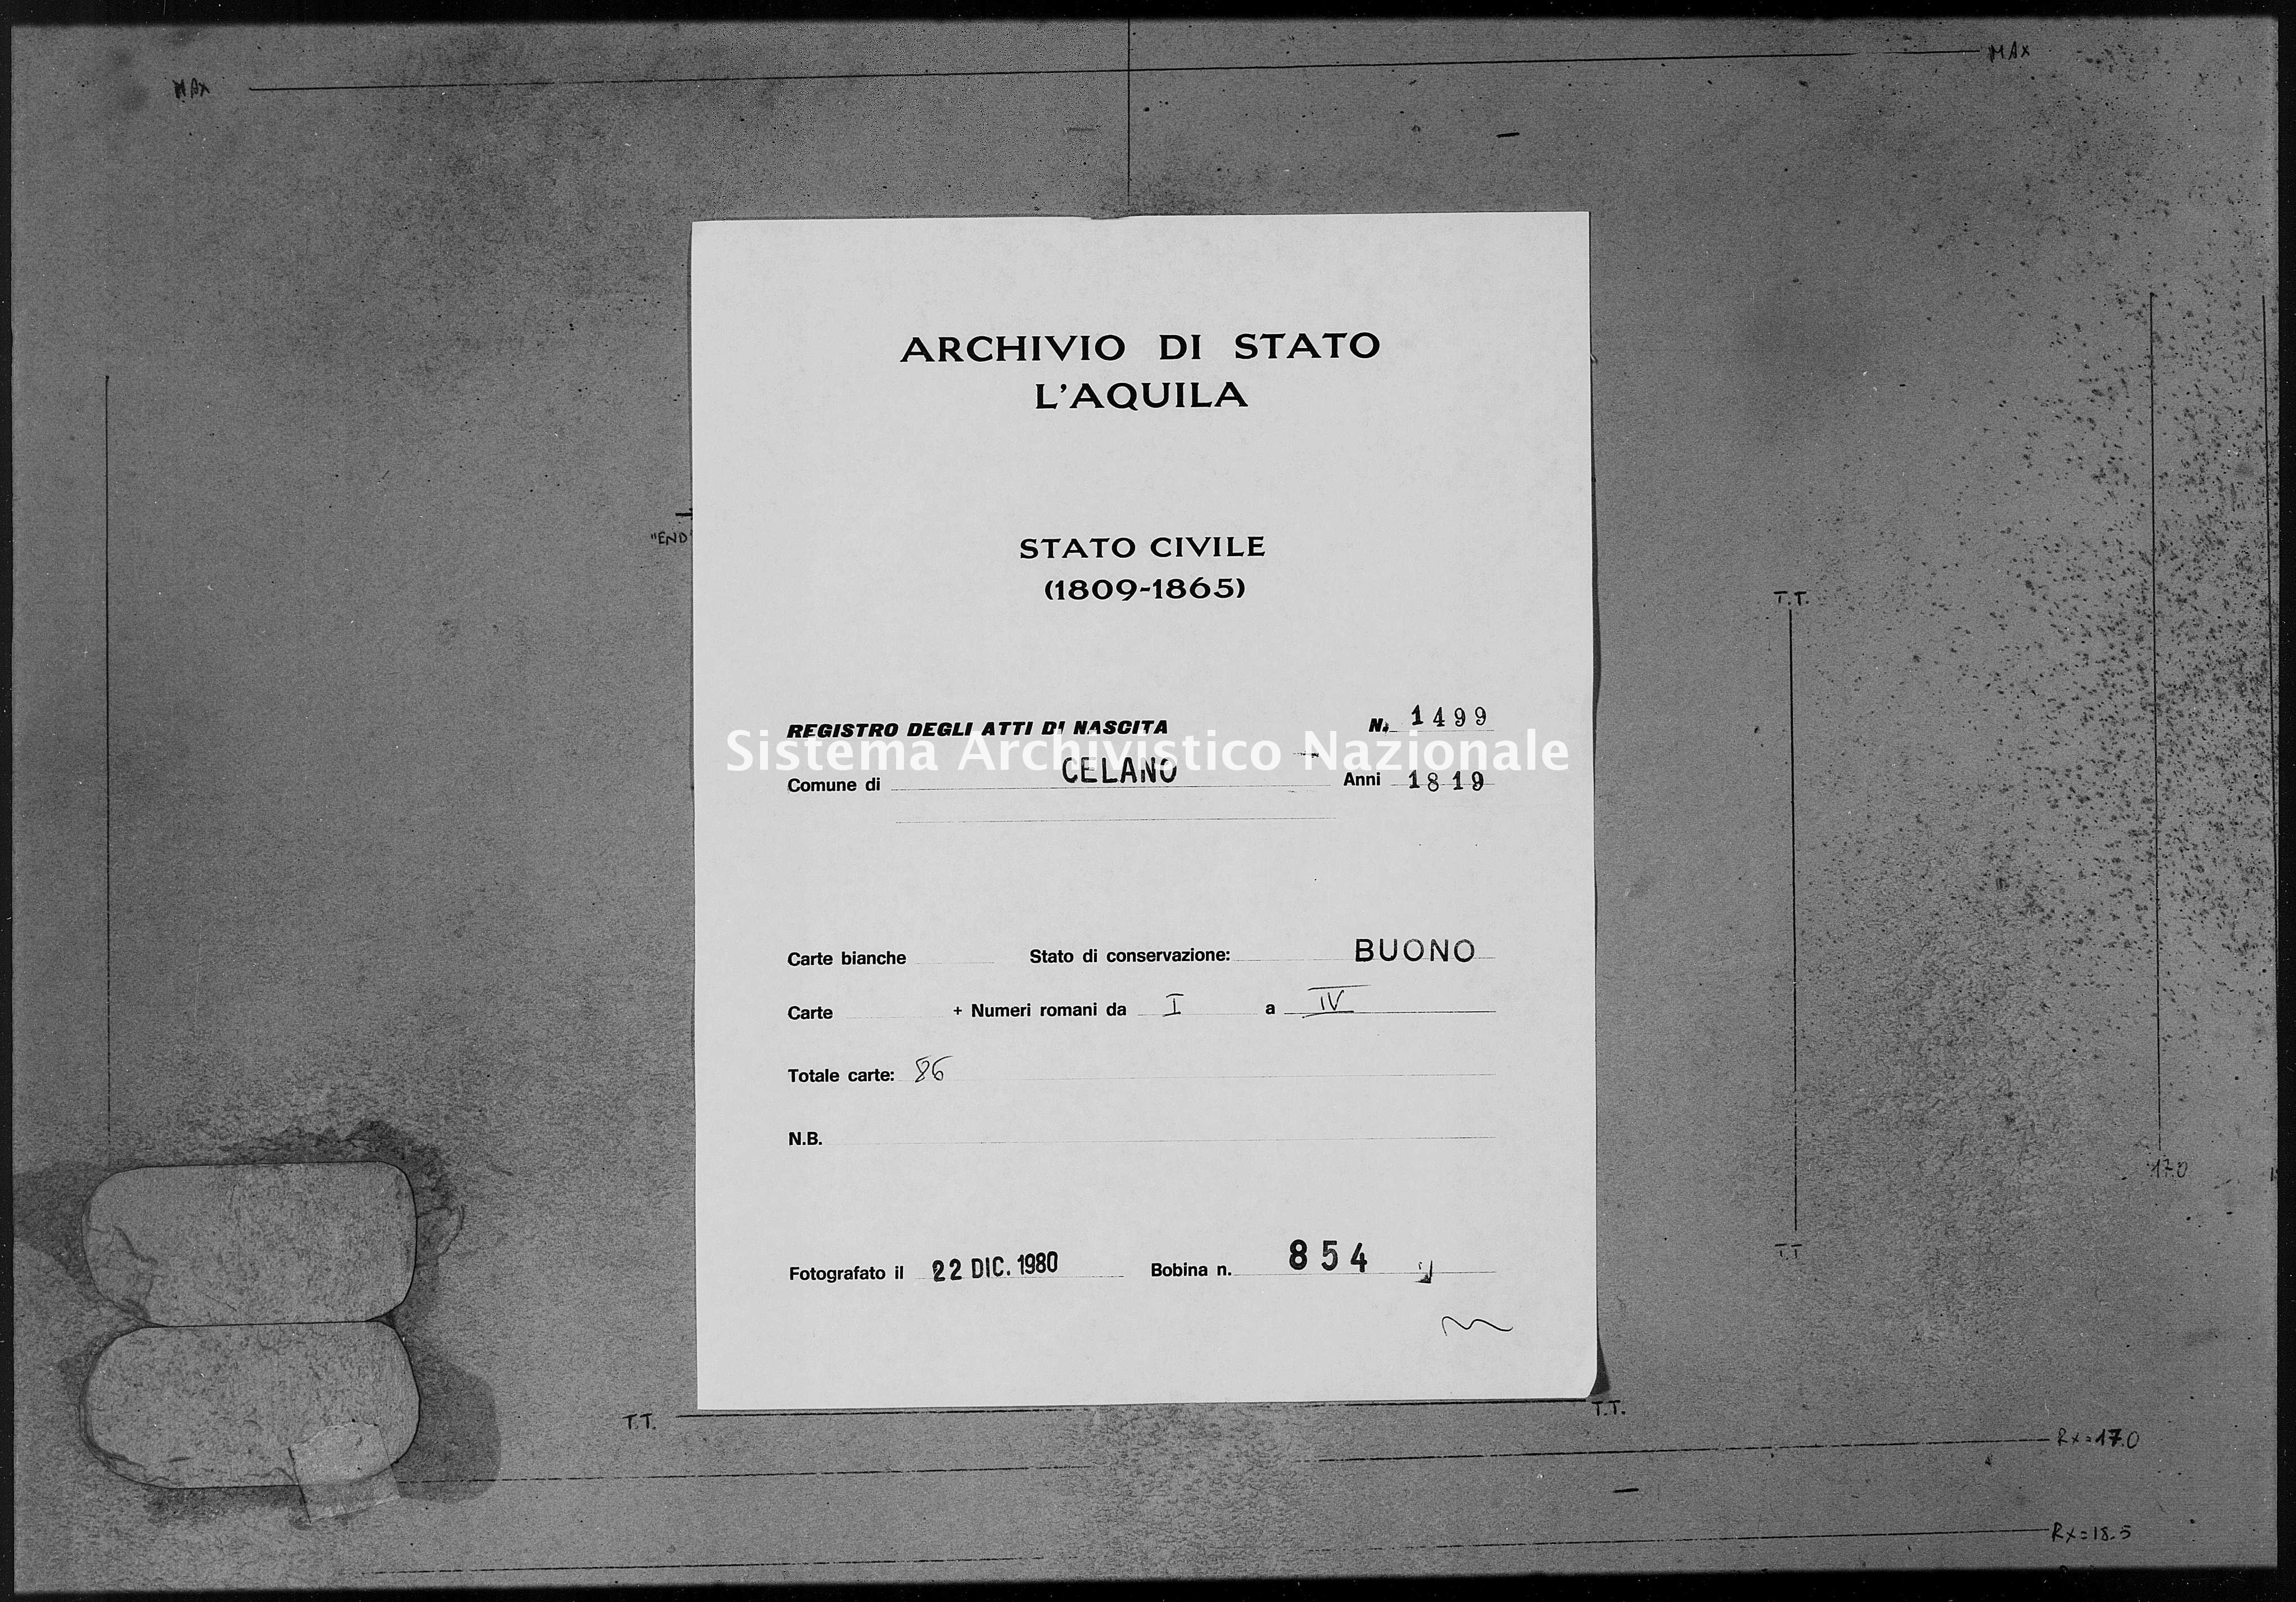 Archivio di stato di L'aquila - Stato civile della restaurazione - Celano - Nati - 1819 - 1499 -